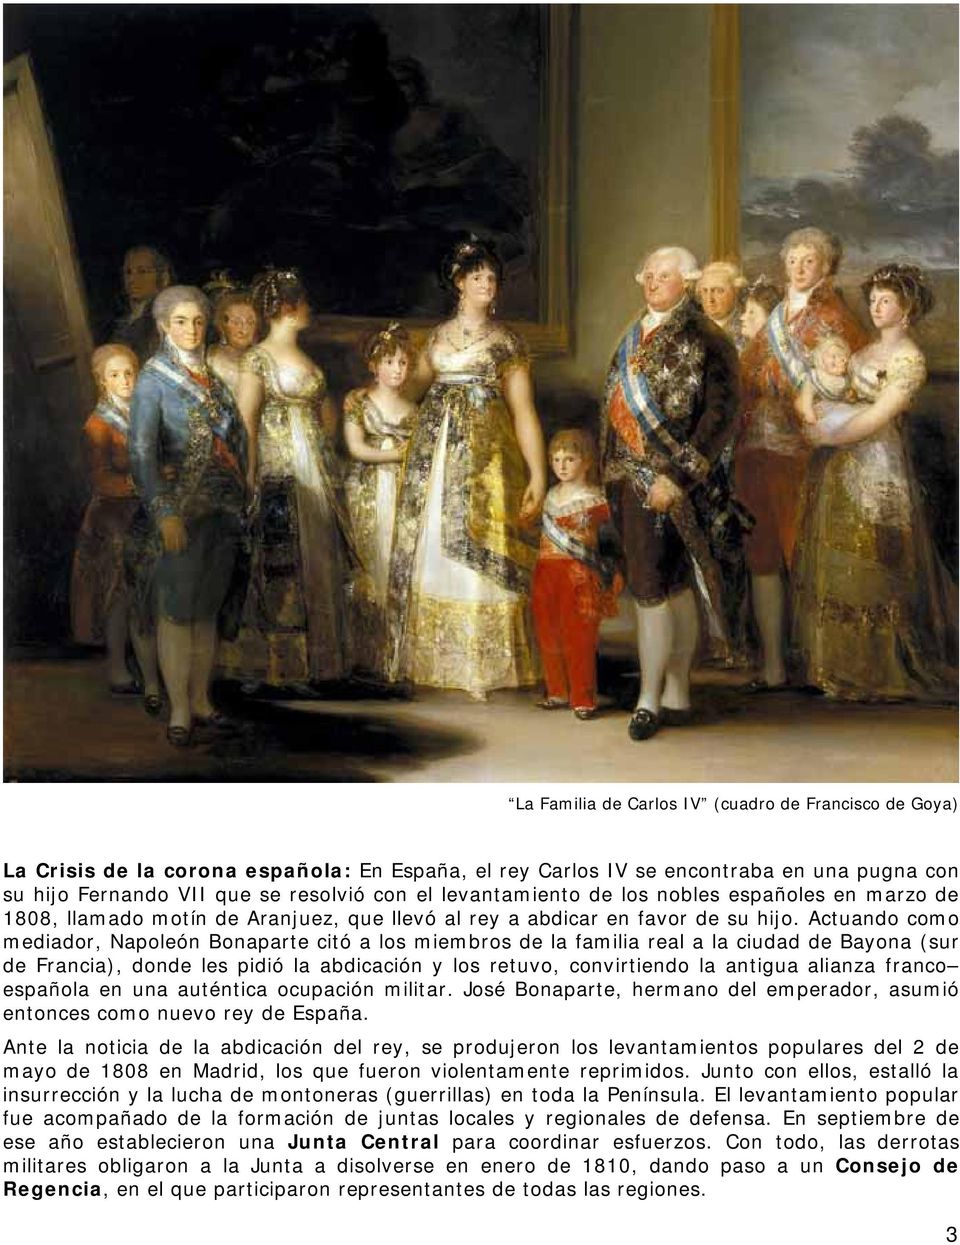 Actuando como mediador, Napoleón Bonaparte citó a los miembros de la familia real a la ciudad de Bayona (sur de Francia), donde les pidió la abdicación y los retuvo, convirtiendo la antigua alianza